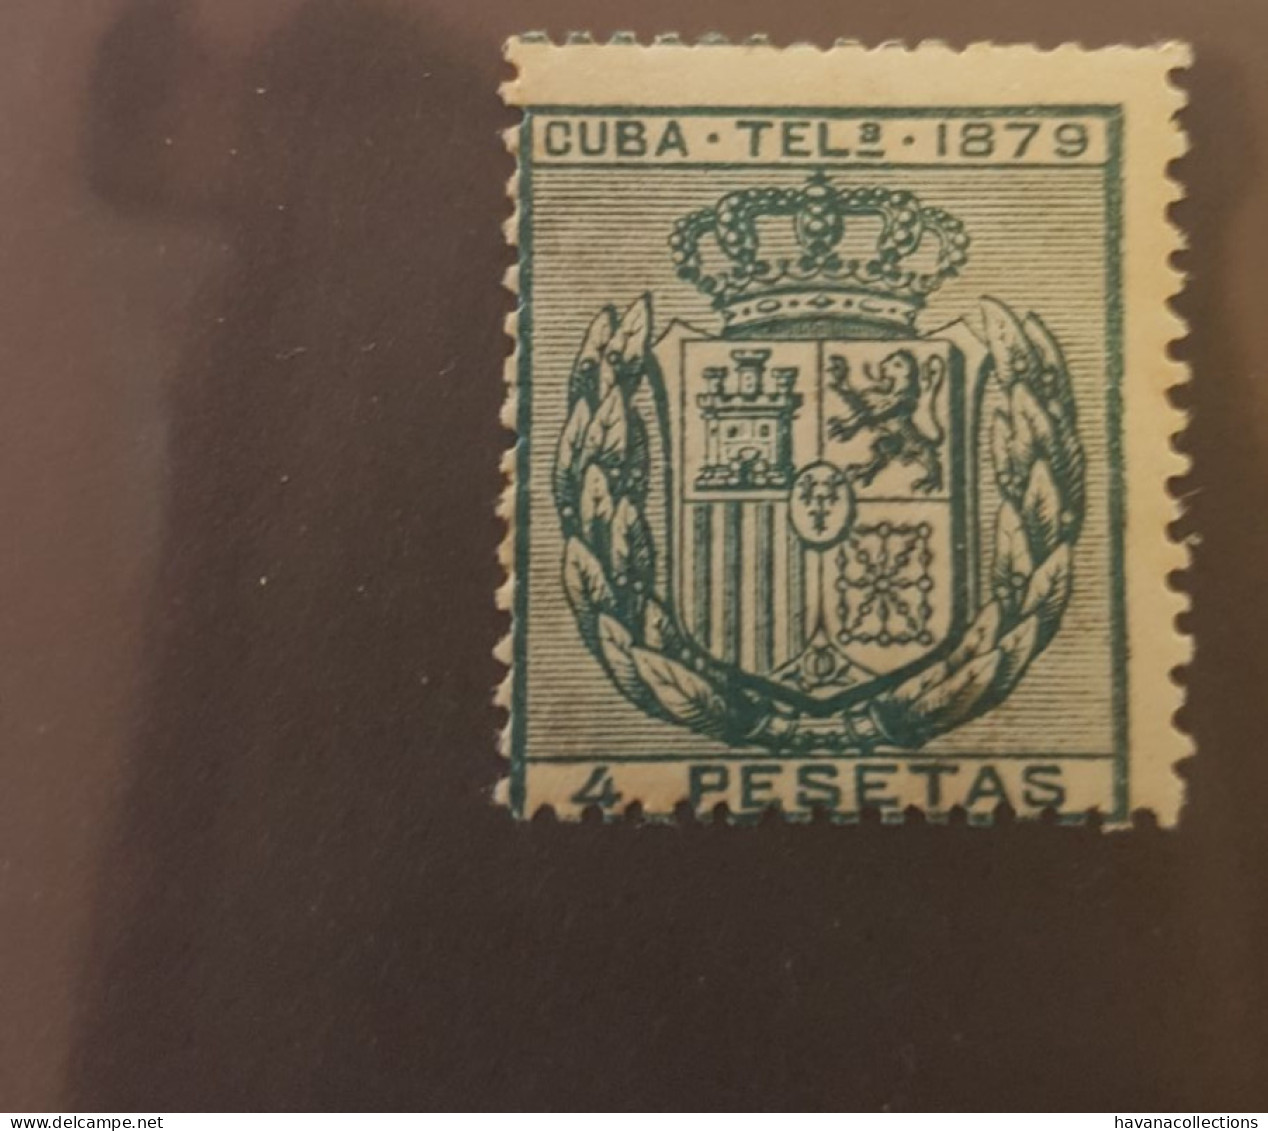 CUBA Télégraphe Telégrafos 4 Pesetas 1879 - Telegrafo